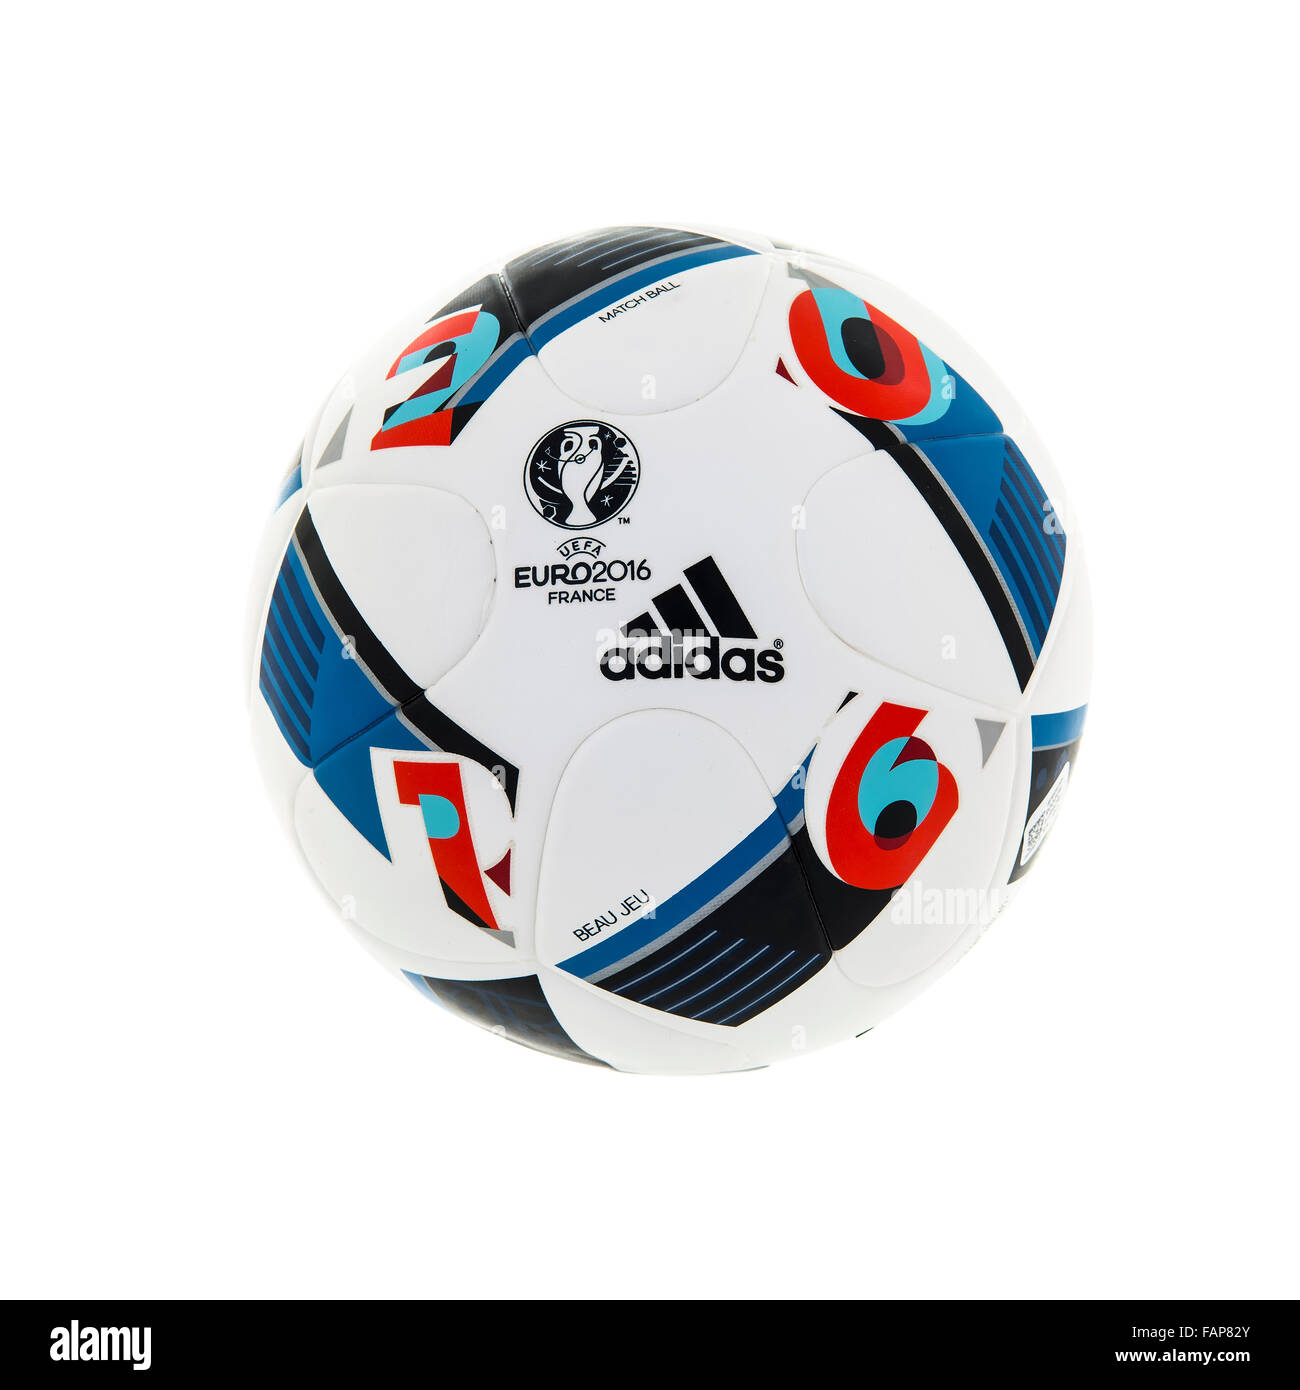 BEAU JEU Adidas ballon de match officiel de l'UEFA EURO 2016 Tournoi de  football en France sur un fond blanc Photo Stock - Alamy